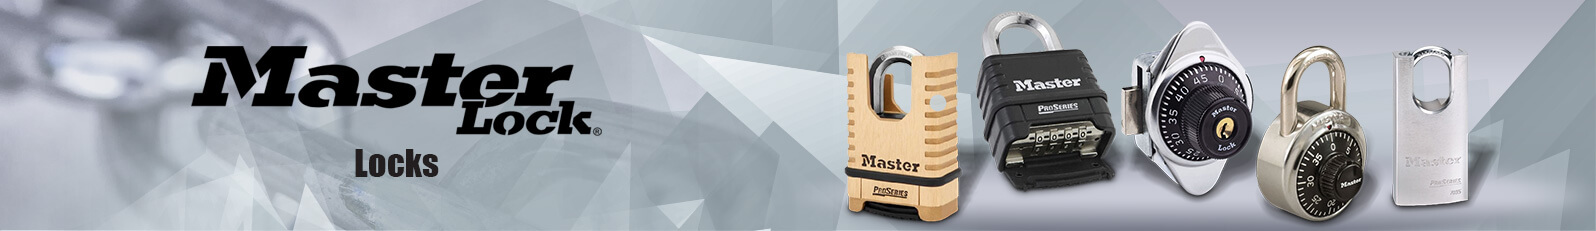 Master Lock Locks